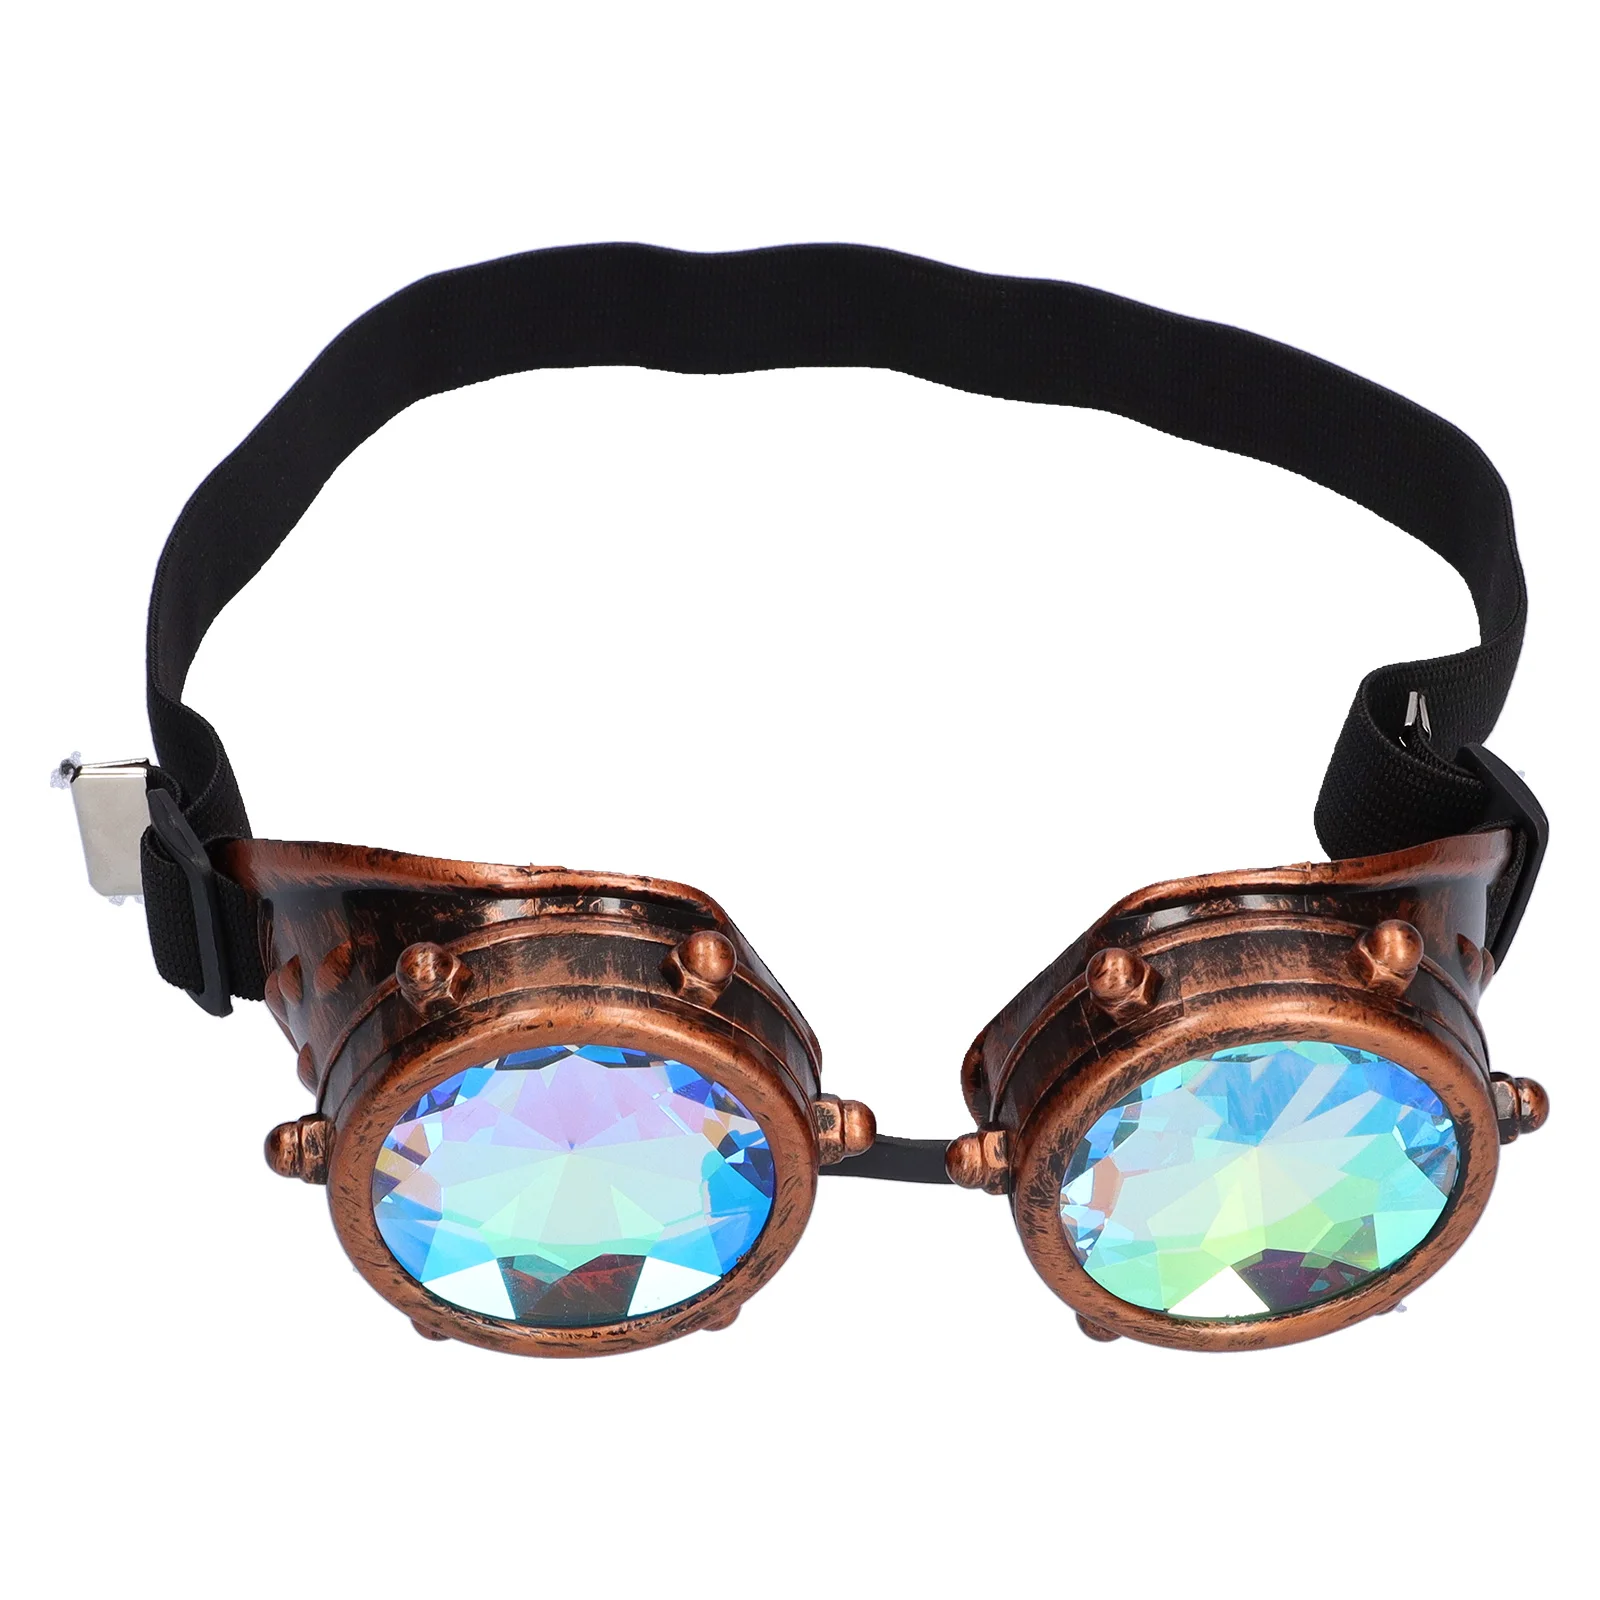 

Цветные очки-калейдоскоп для фестиваля, вечевечерние НКИ, EDM, солнцезащитные очки с диффузионными линзами, очки в стиле стимпанк для уличной...